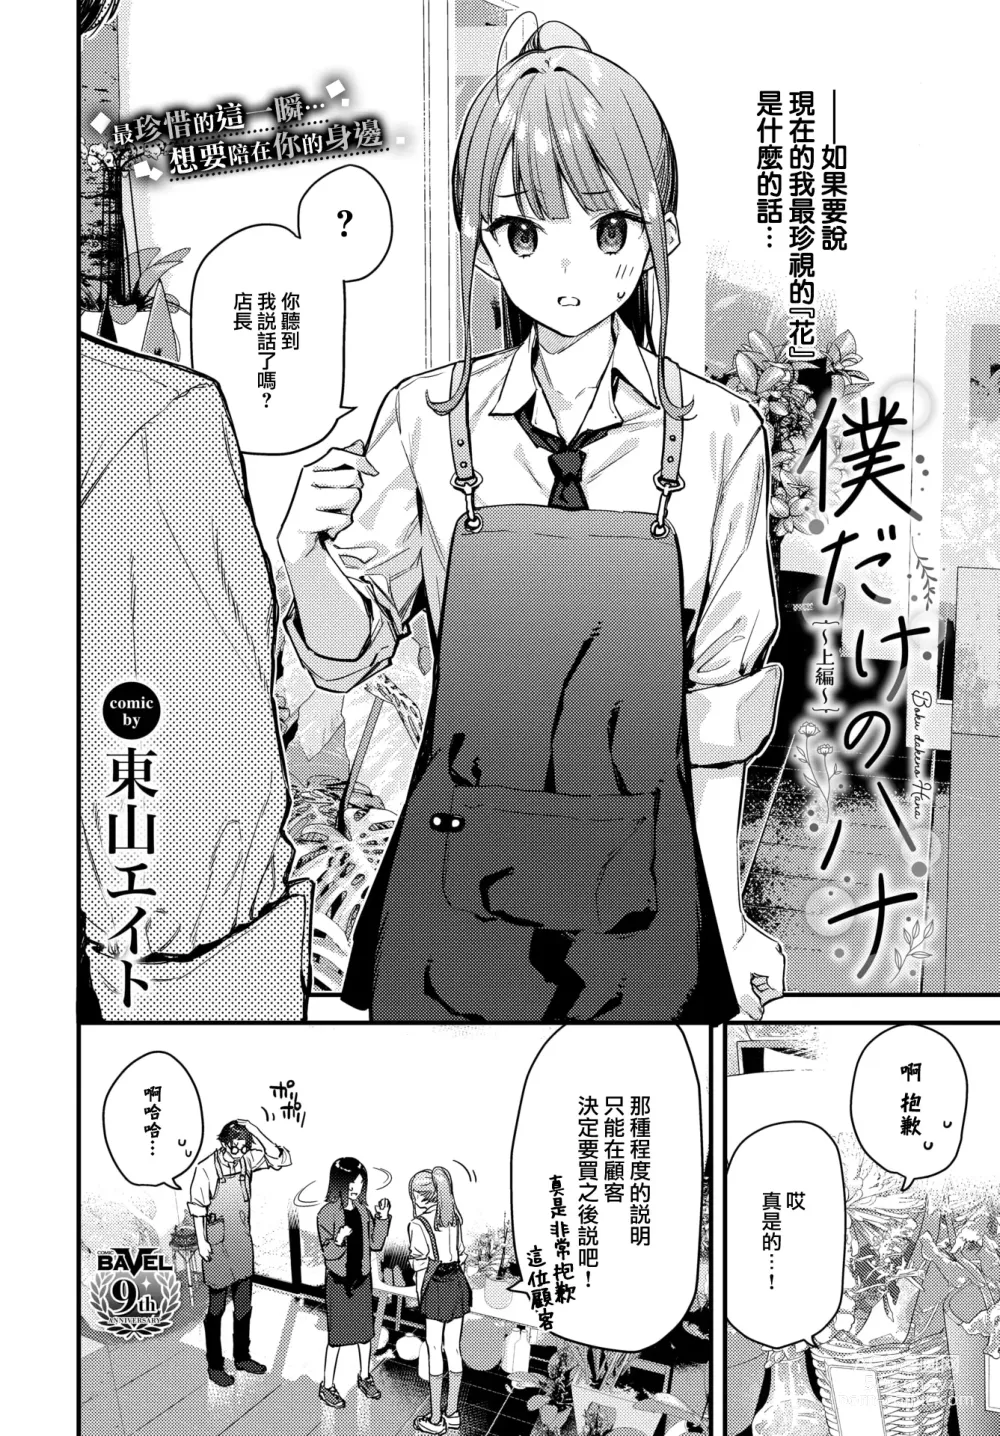 Page 3 of manga Bokudake no Hana ~Jouhen~